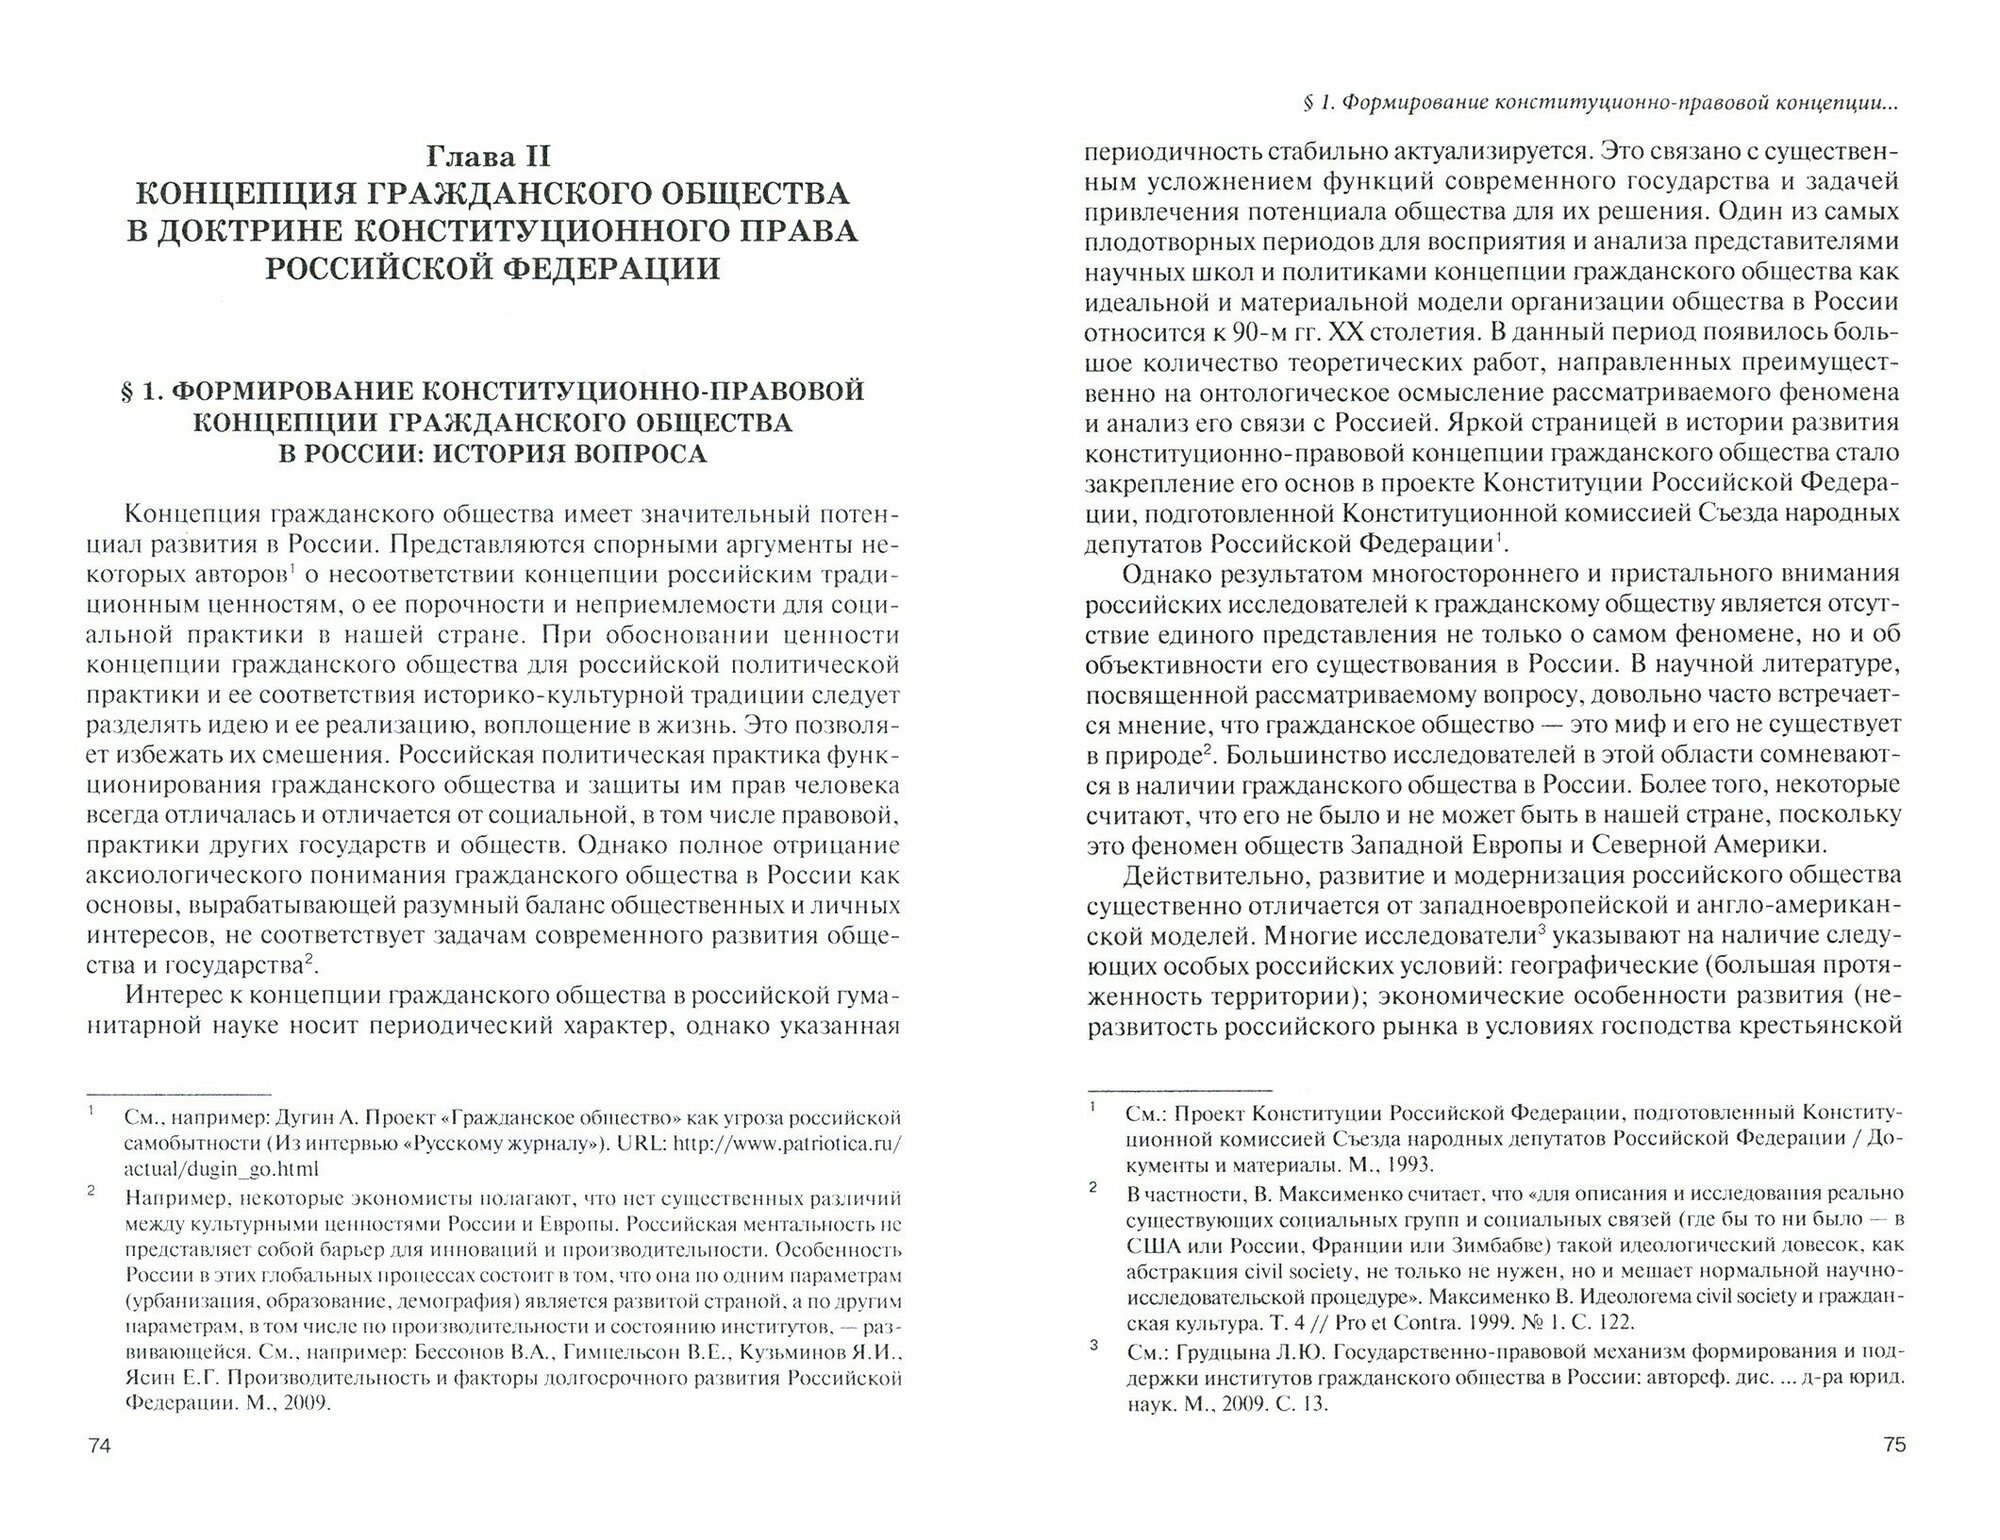 Конституционно-правовые основы институционализации гражданского общества в Российской Федерации - фото №5